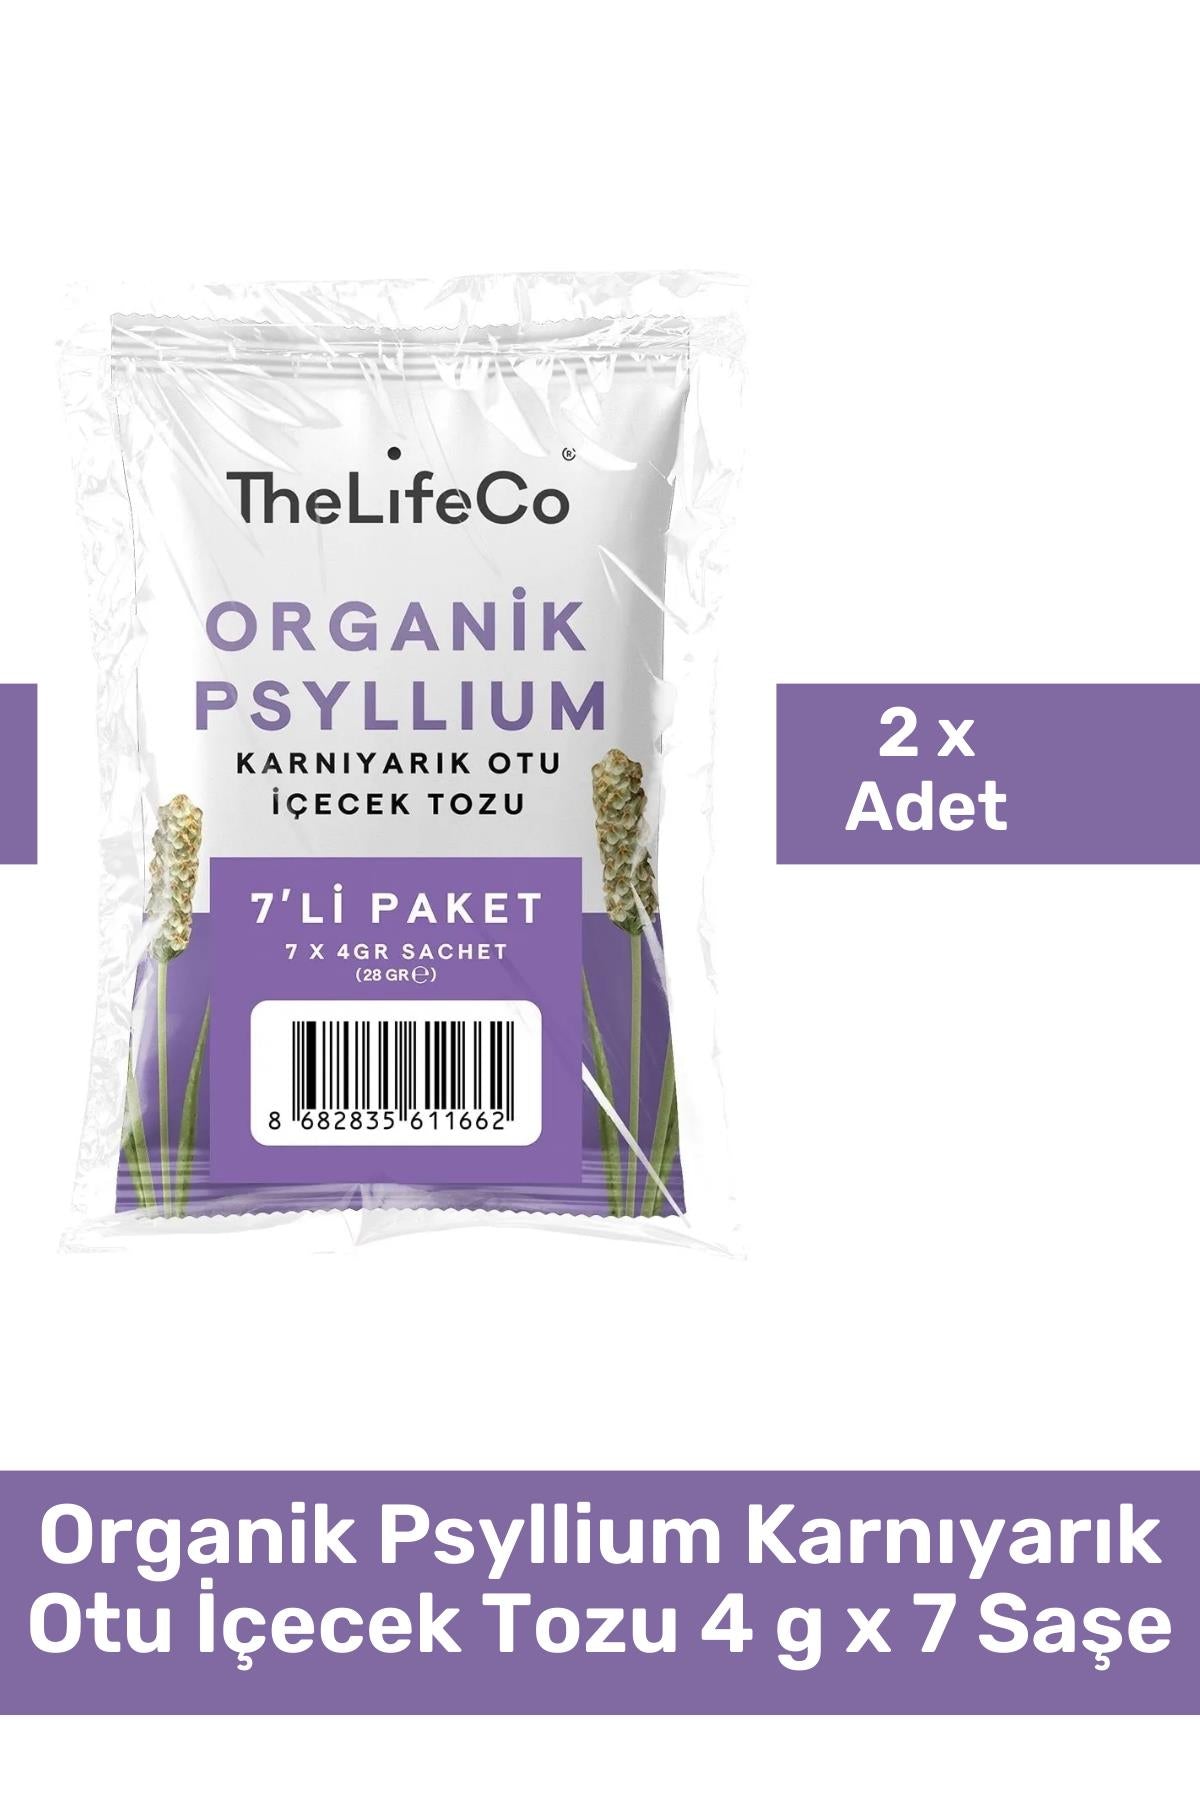 TheLifeCo Organik Psyllium Karnıyarık Otu İçecek Tozu 4 g x 7 Saşe 2'li Paket